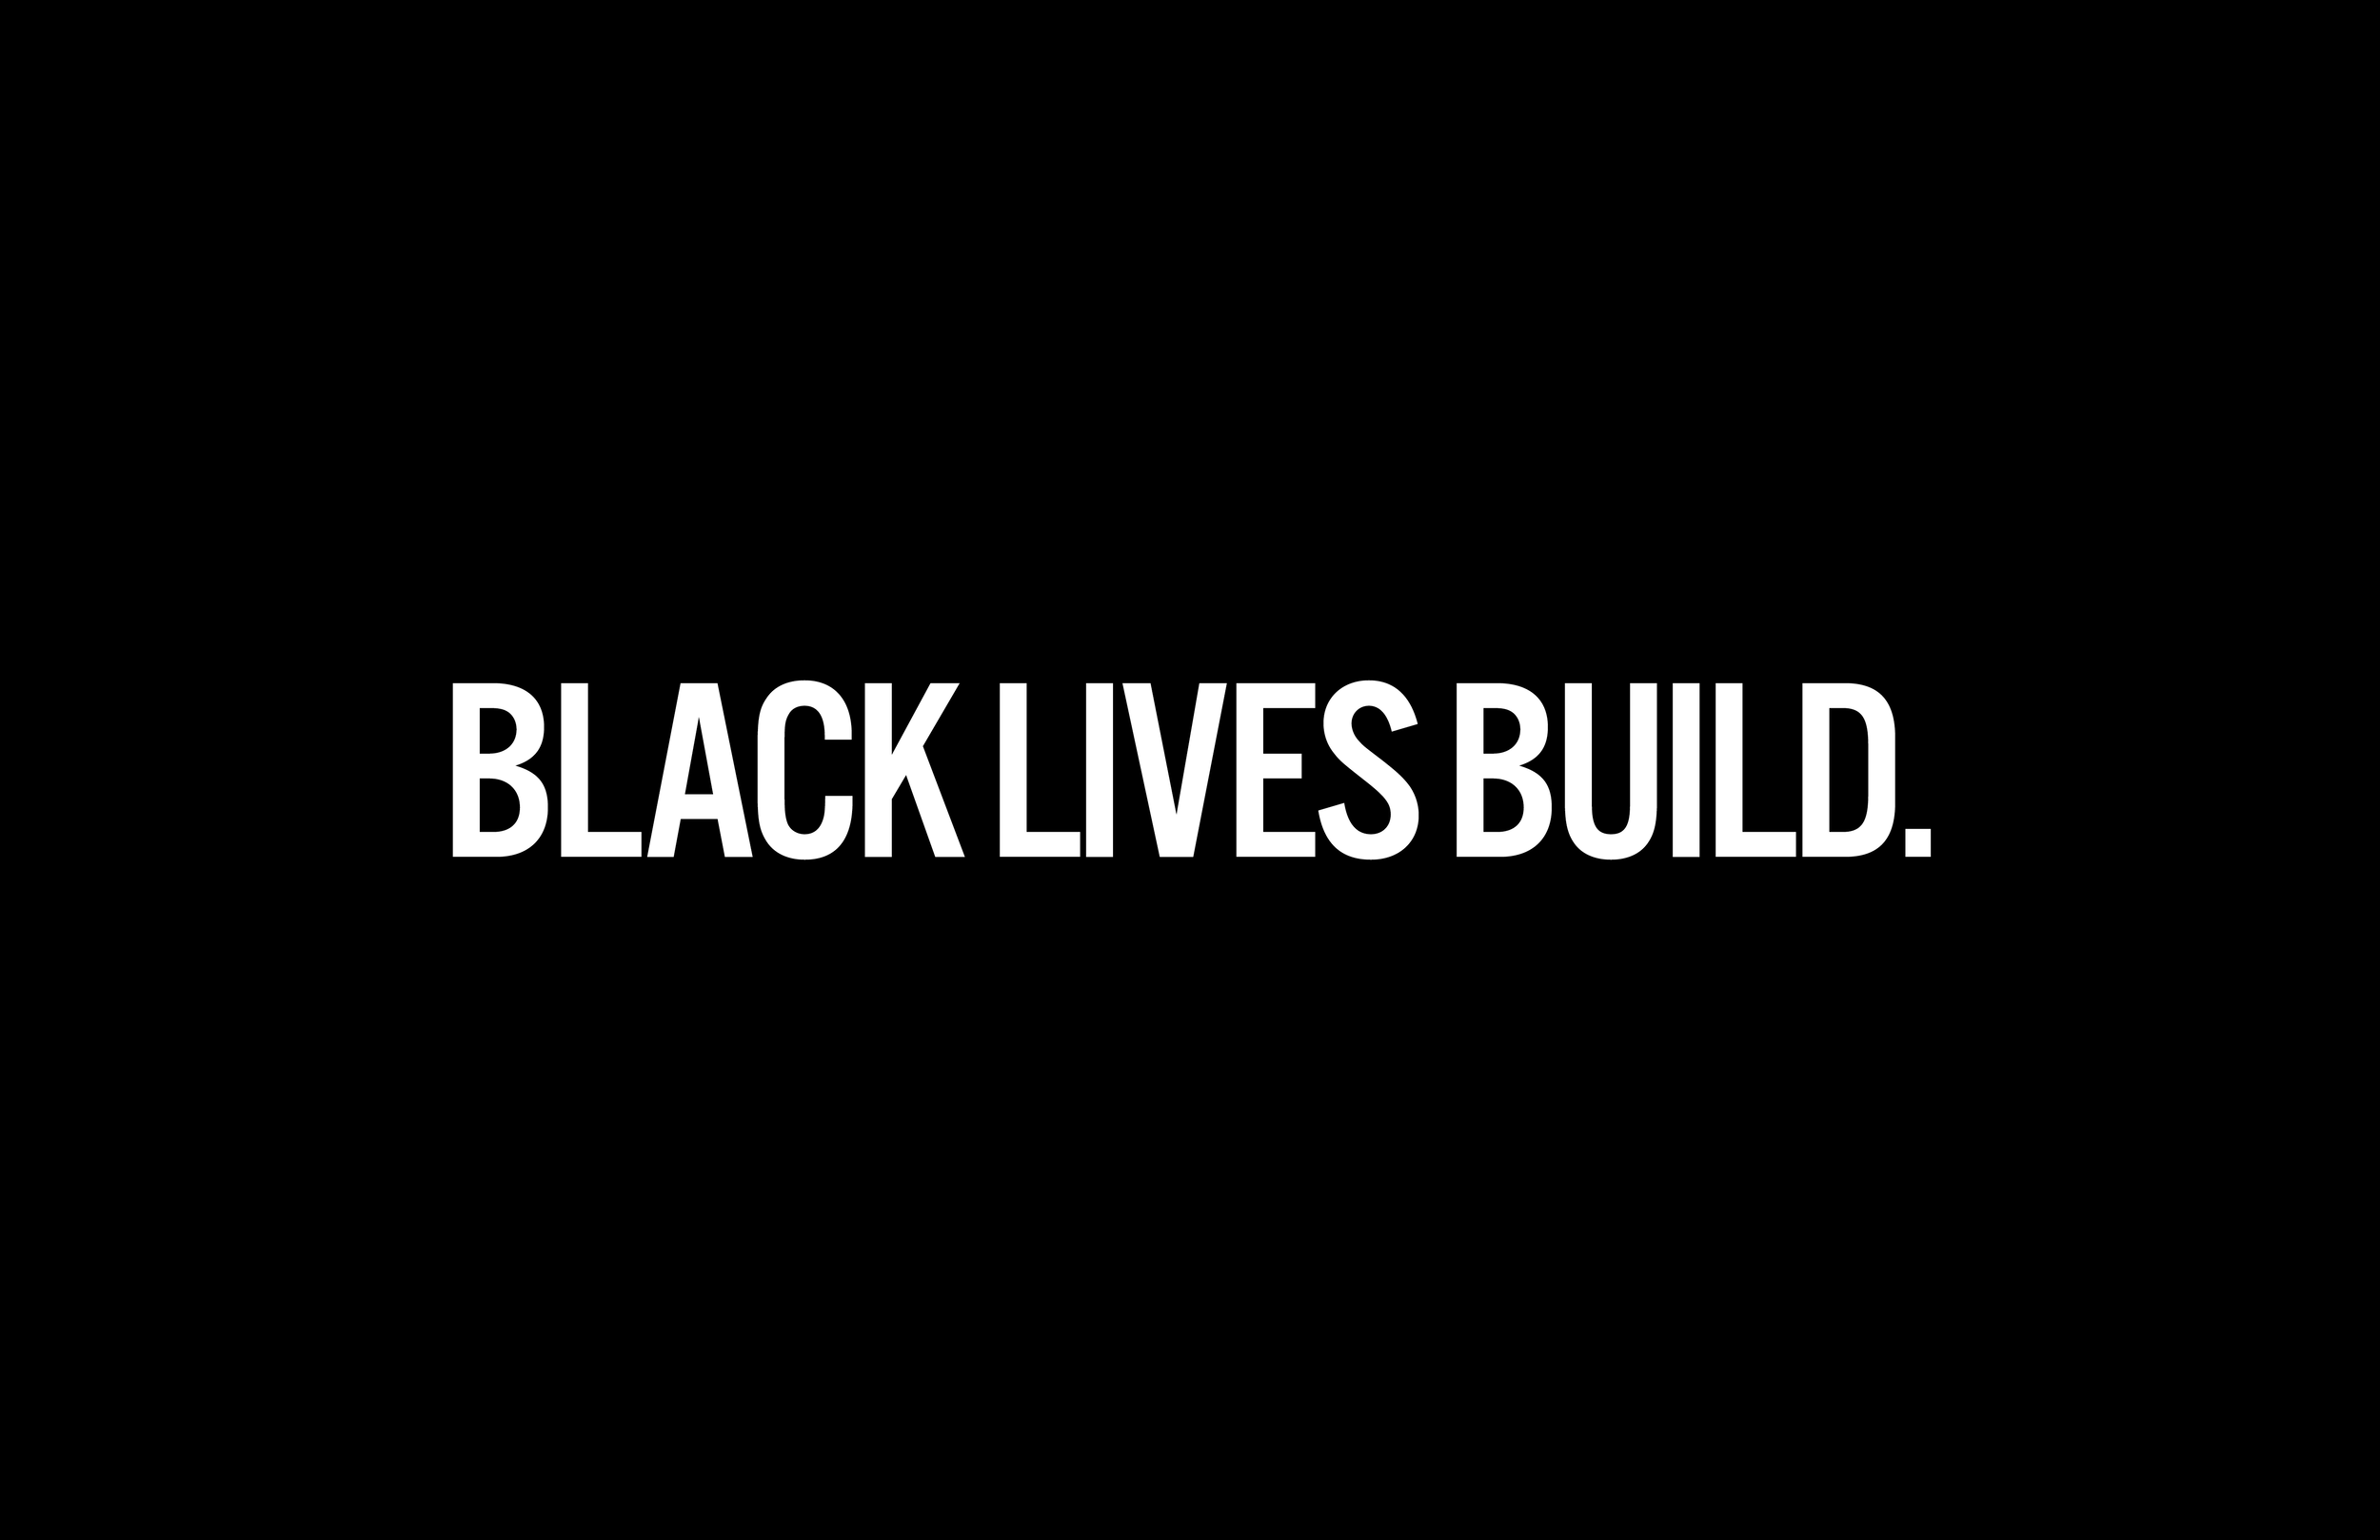 Black Lives_08192014.png